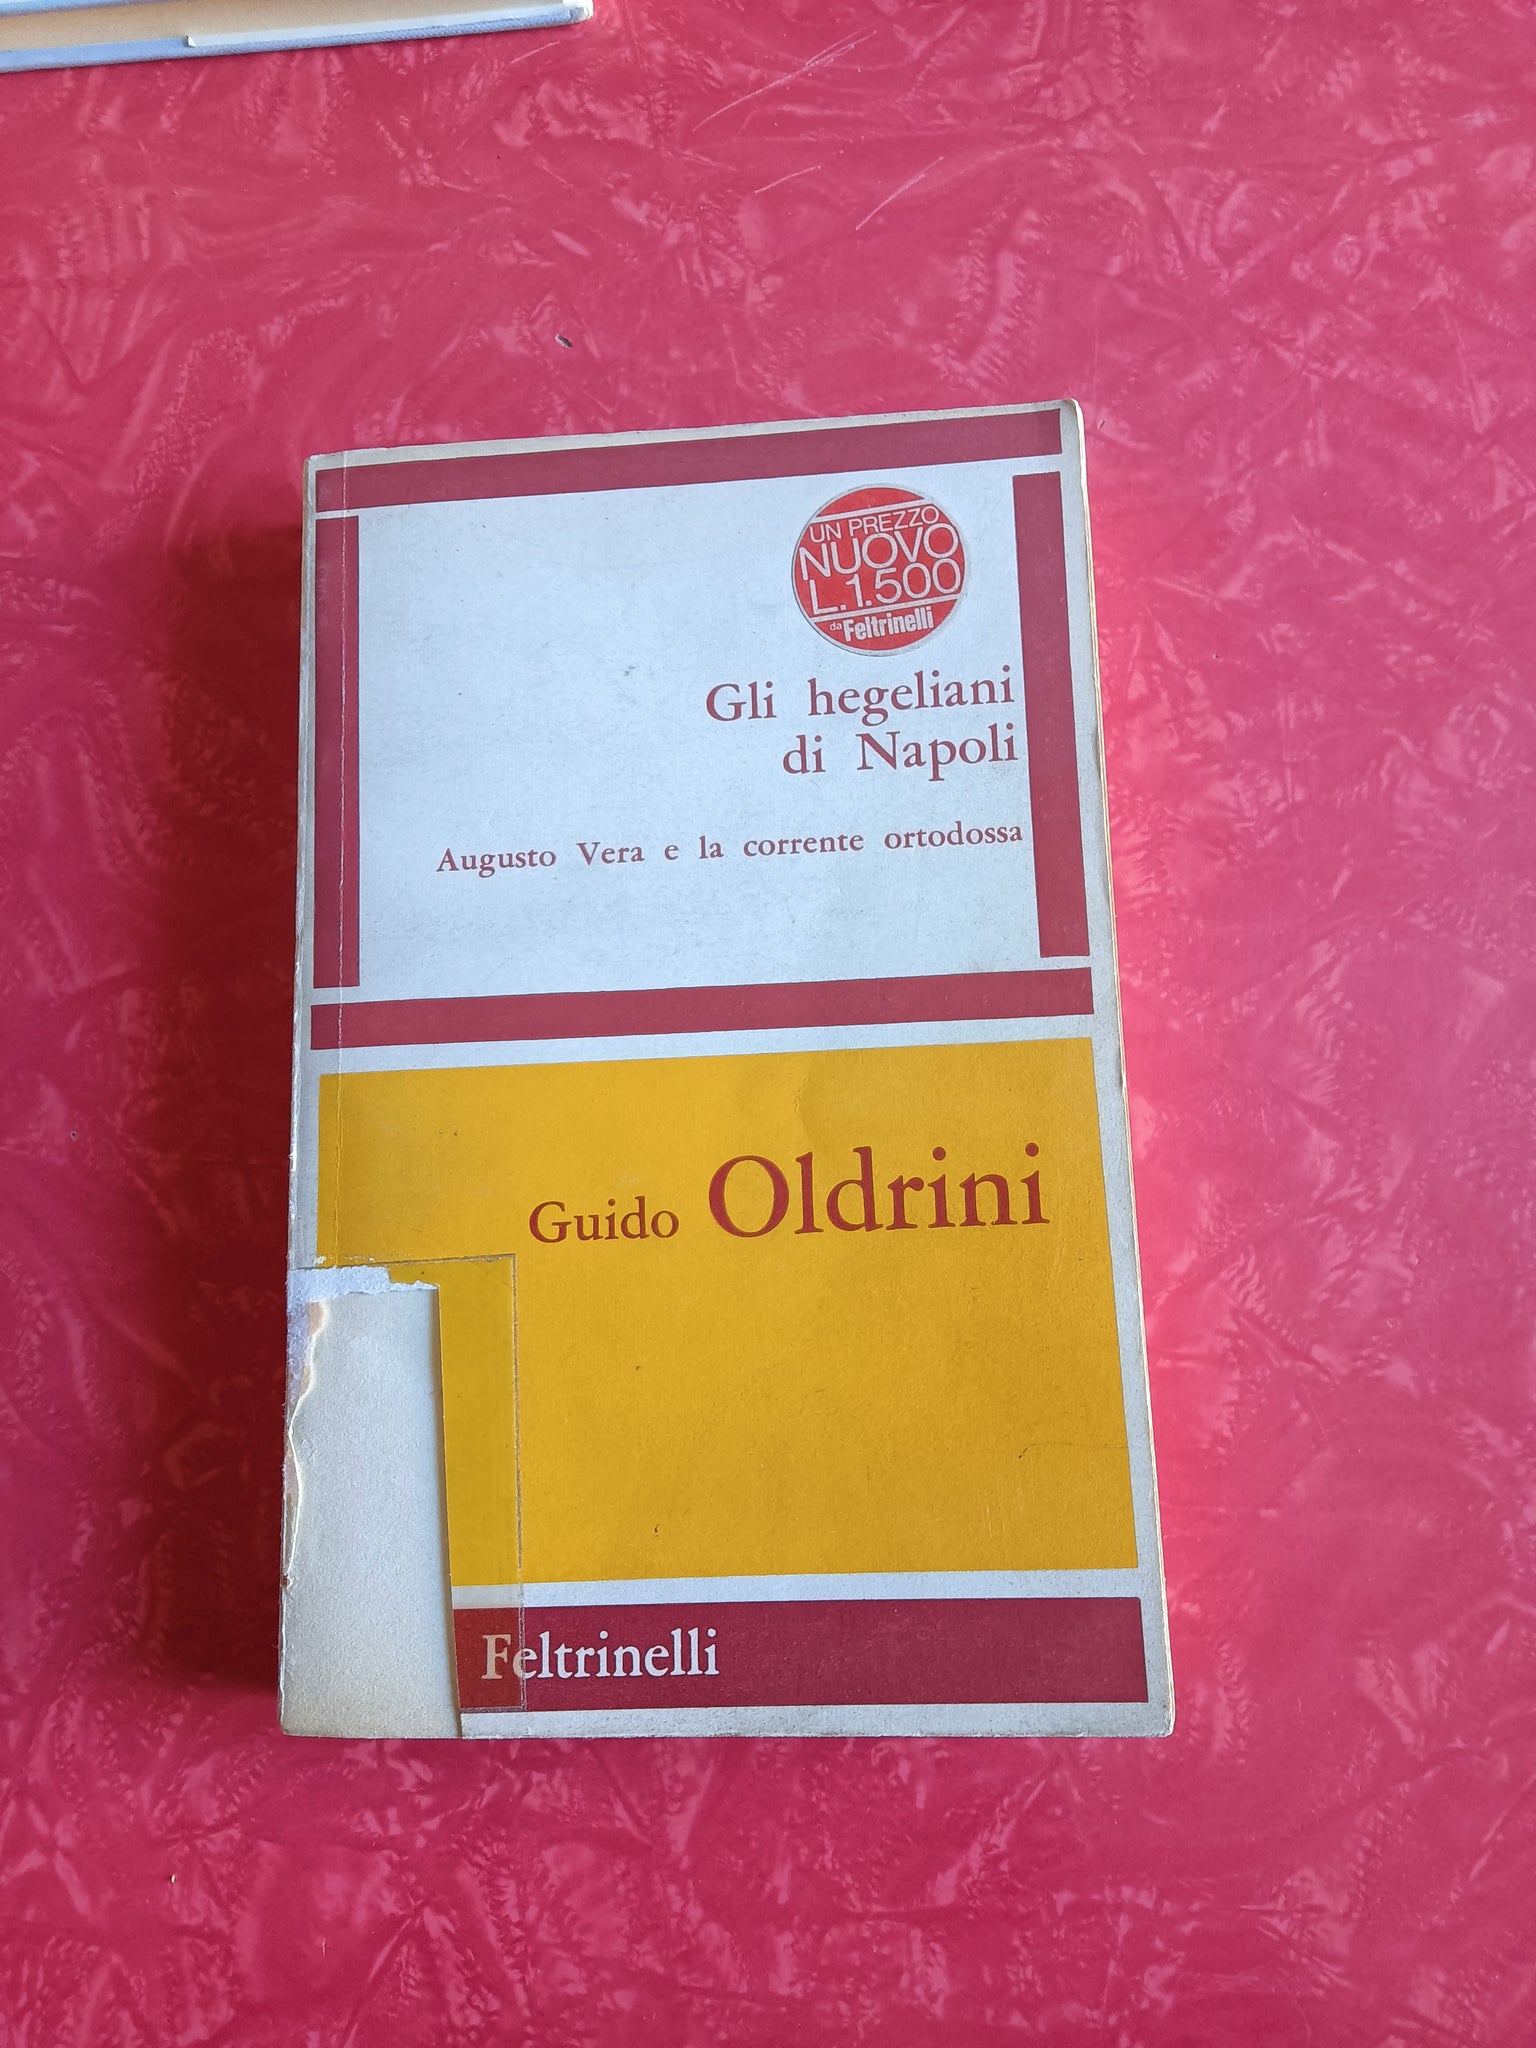 Gli hegeliani di Napoli. Augusto Vera e la corrente ortodossa | Guido Oldrini - Feltrinelli